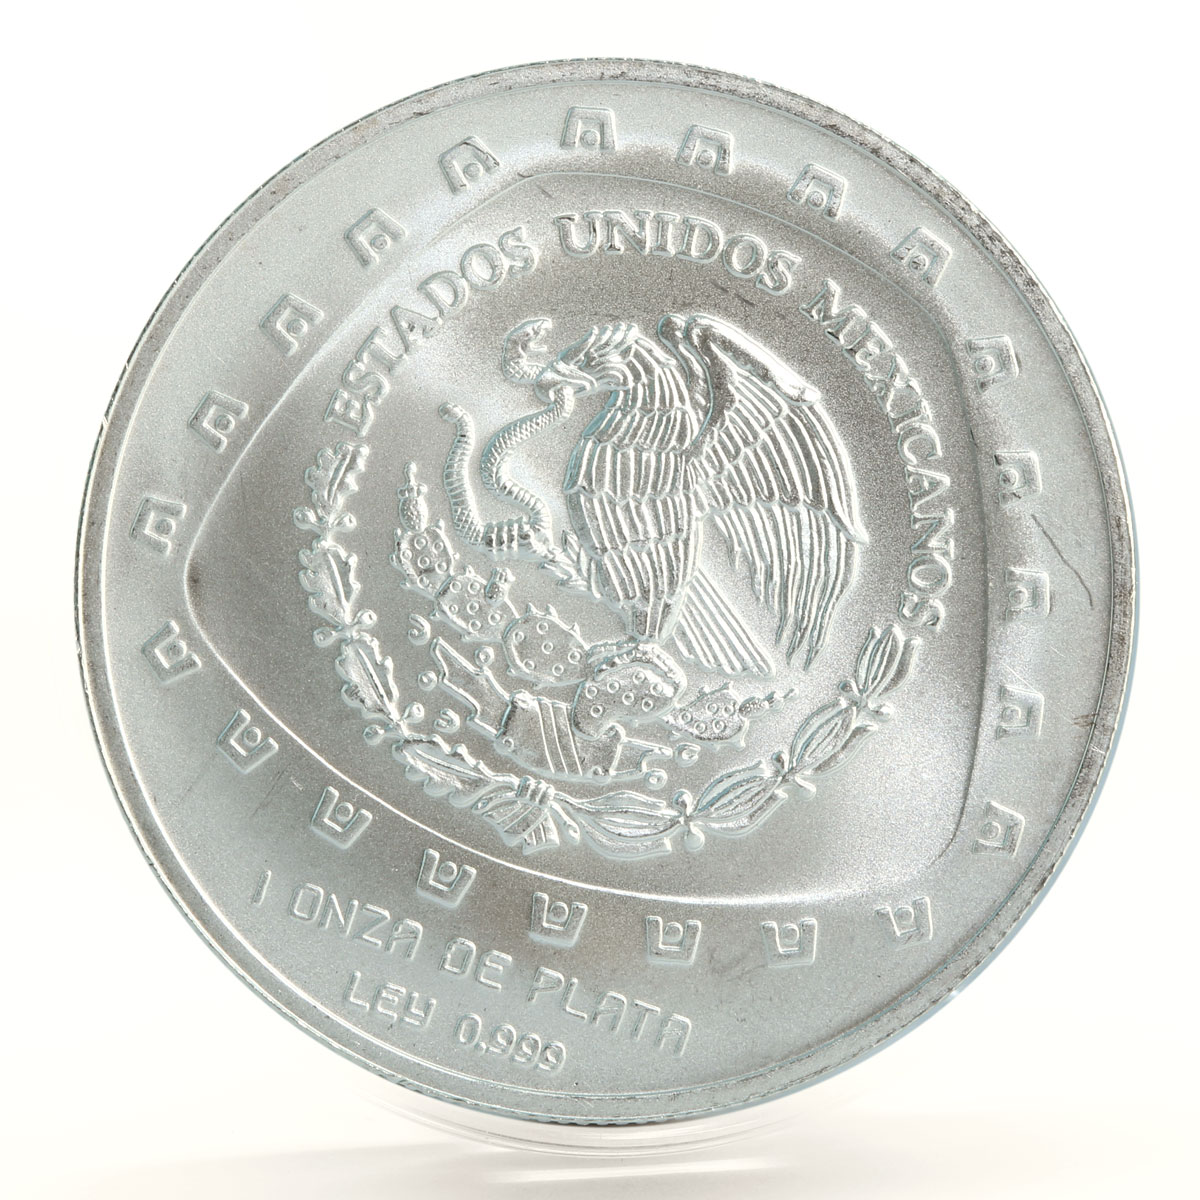 Mexico 5 pesos Serpiente con Craneo Snake Skull silver coin 1998